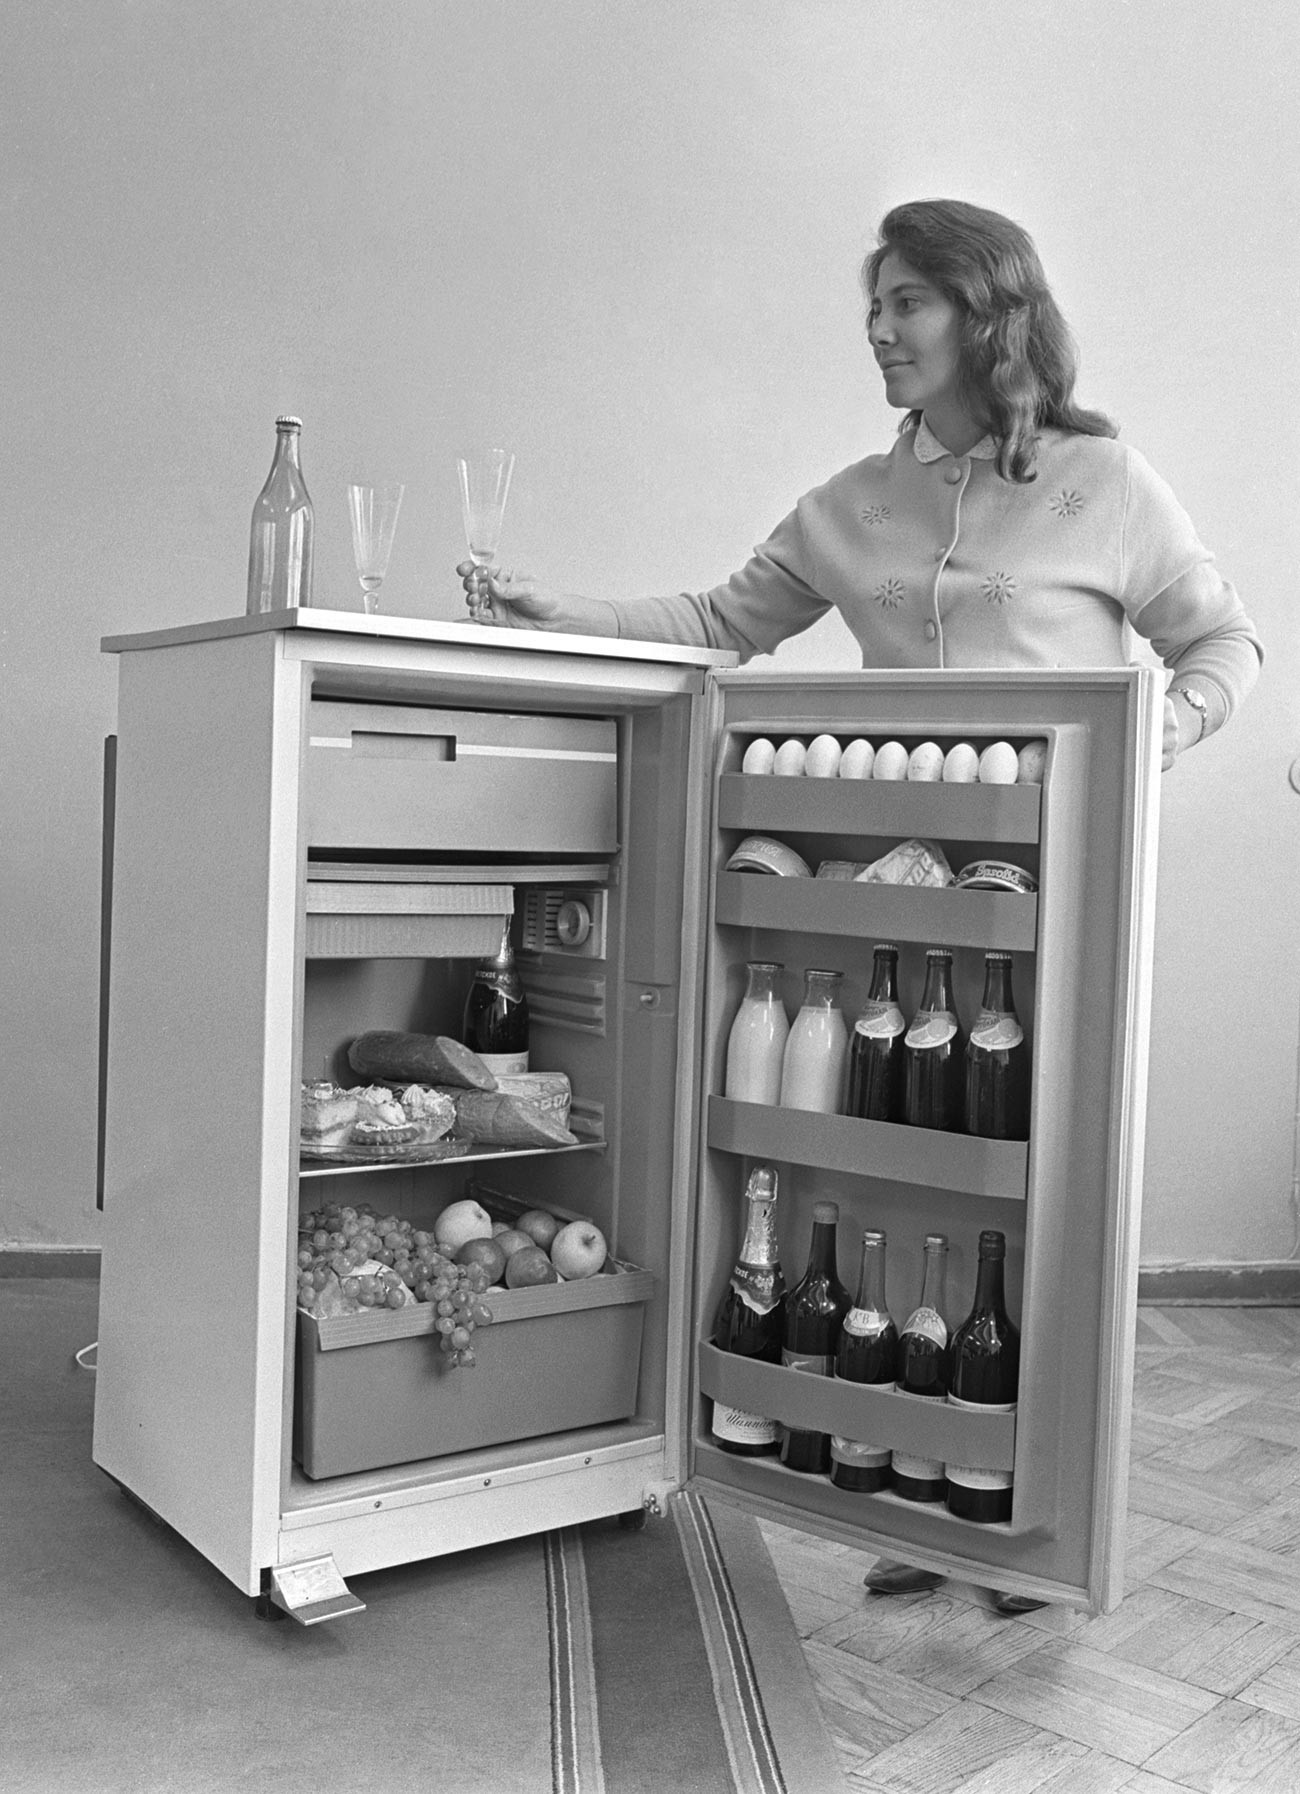 Tovarna hladilnikov v Kišinjevu, 1970

